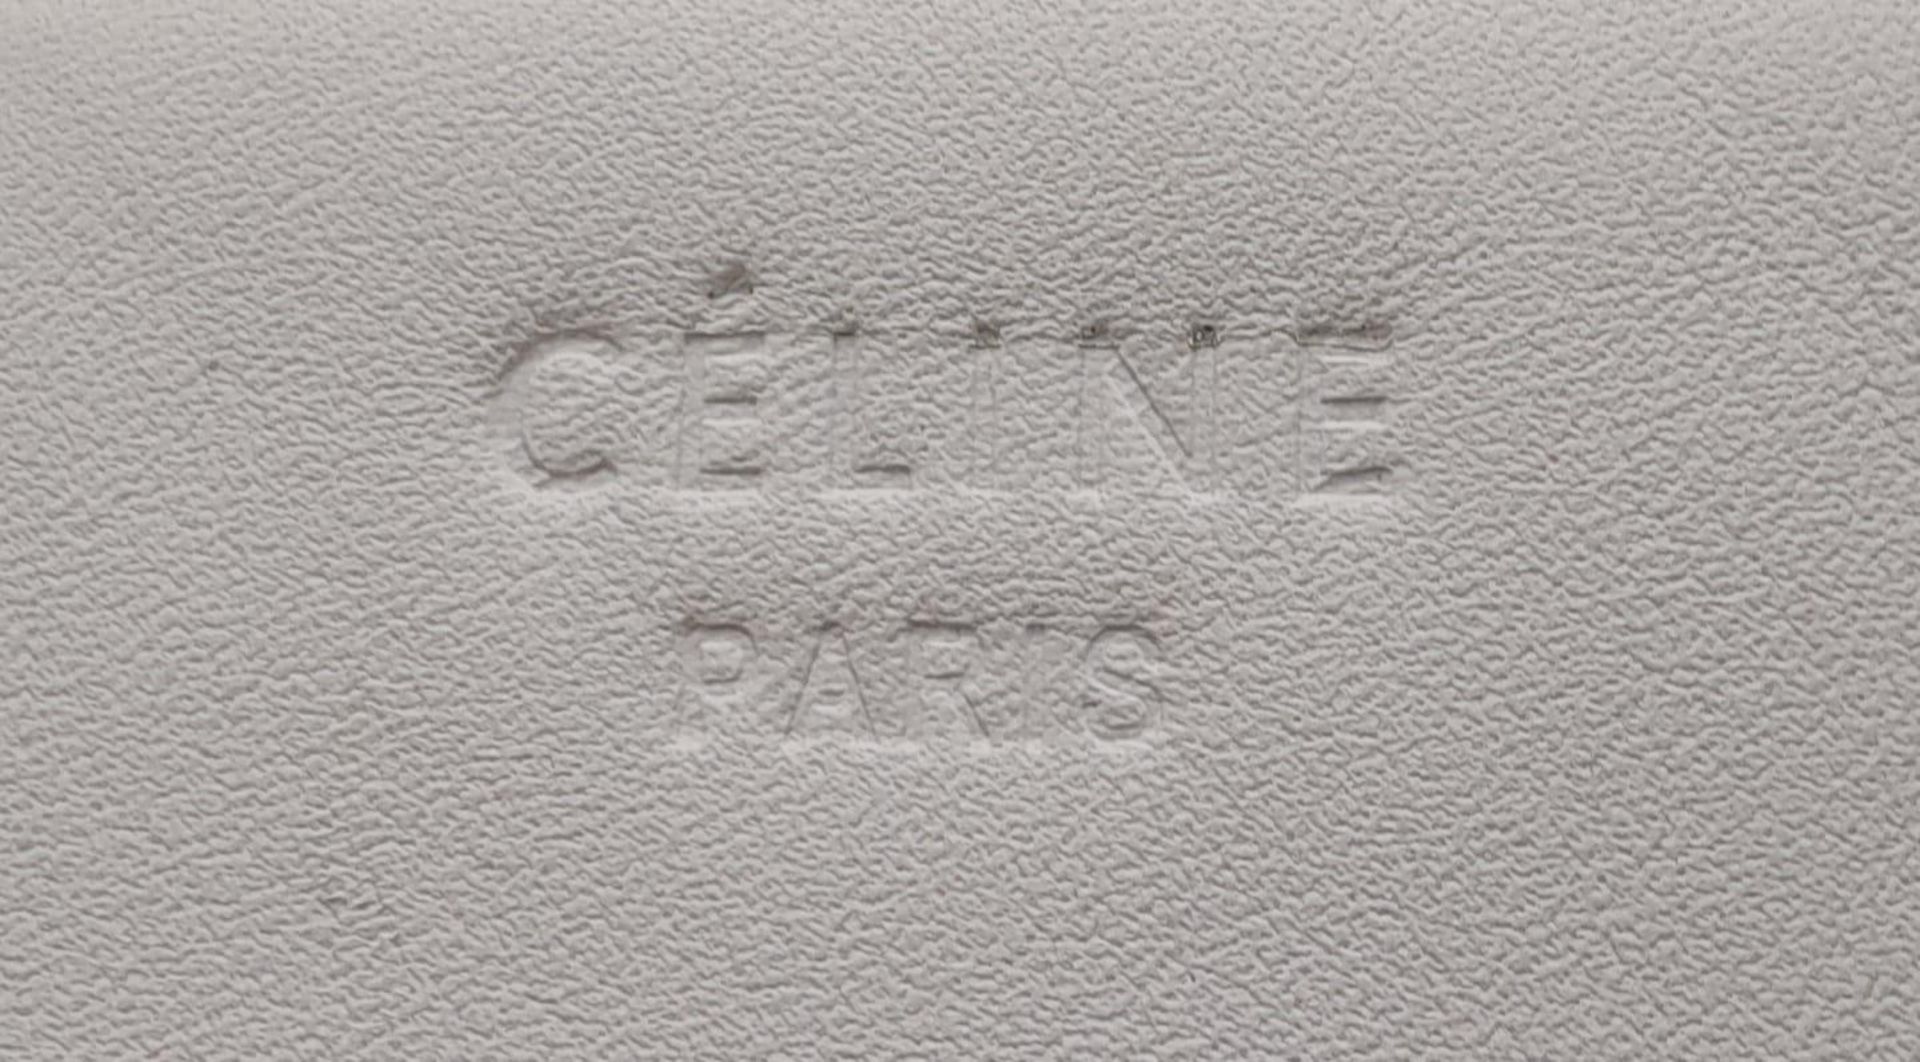 A Celine - Paris ladies tote bag , cream leather with orange interior, dimensions: 30 x 24 x 40 cm - Image 7 of 8